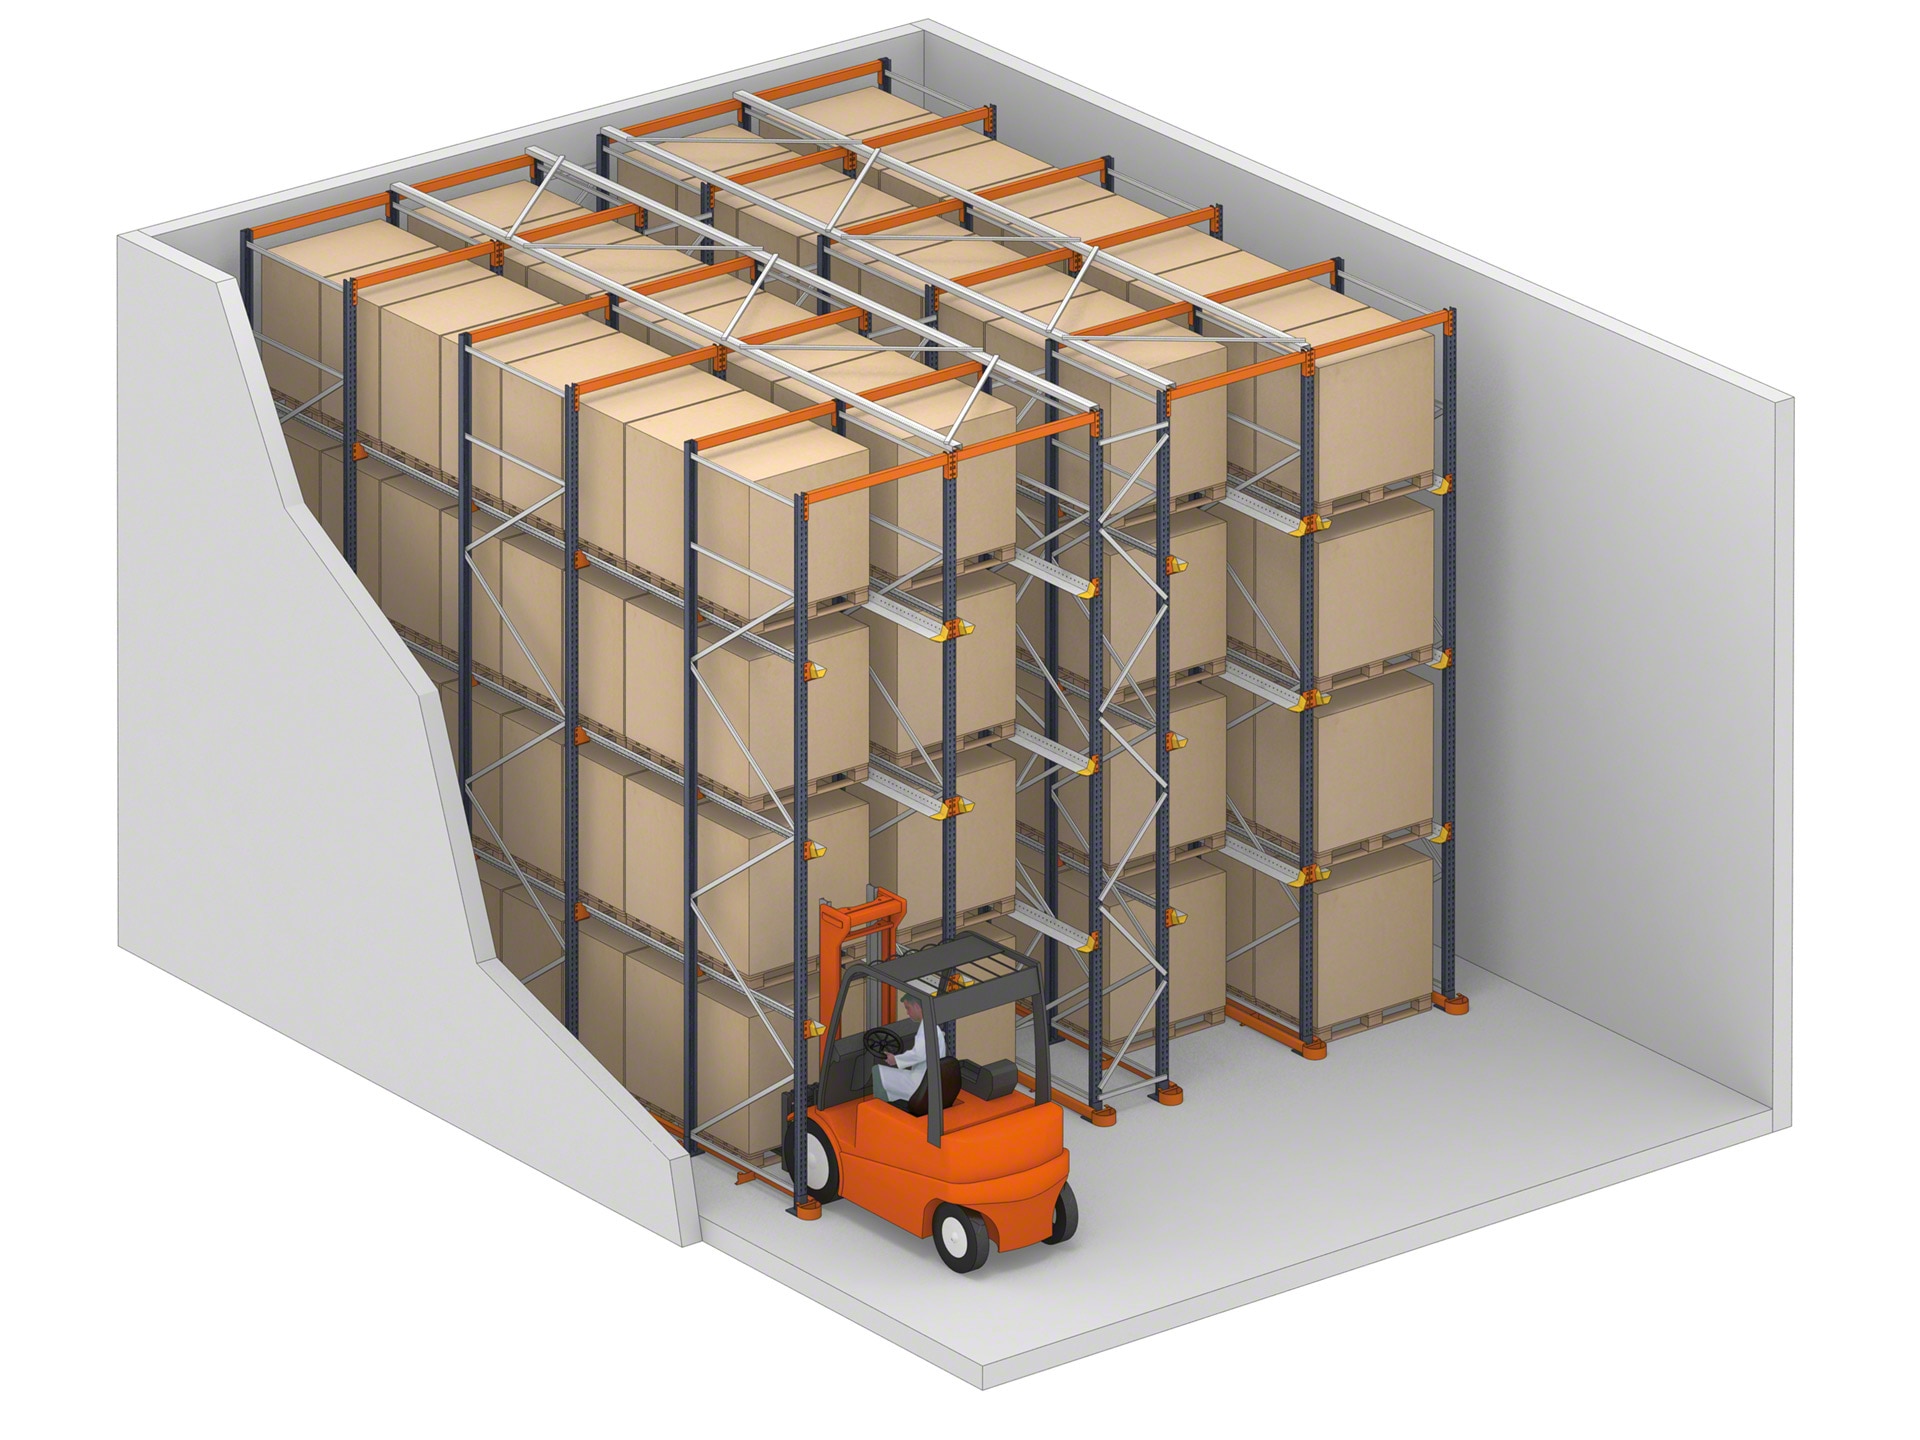 El sistema drive-in son estanterías en las que las carretillas pueden acceder a la mercancía por sus canales de almacenaje